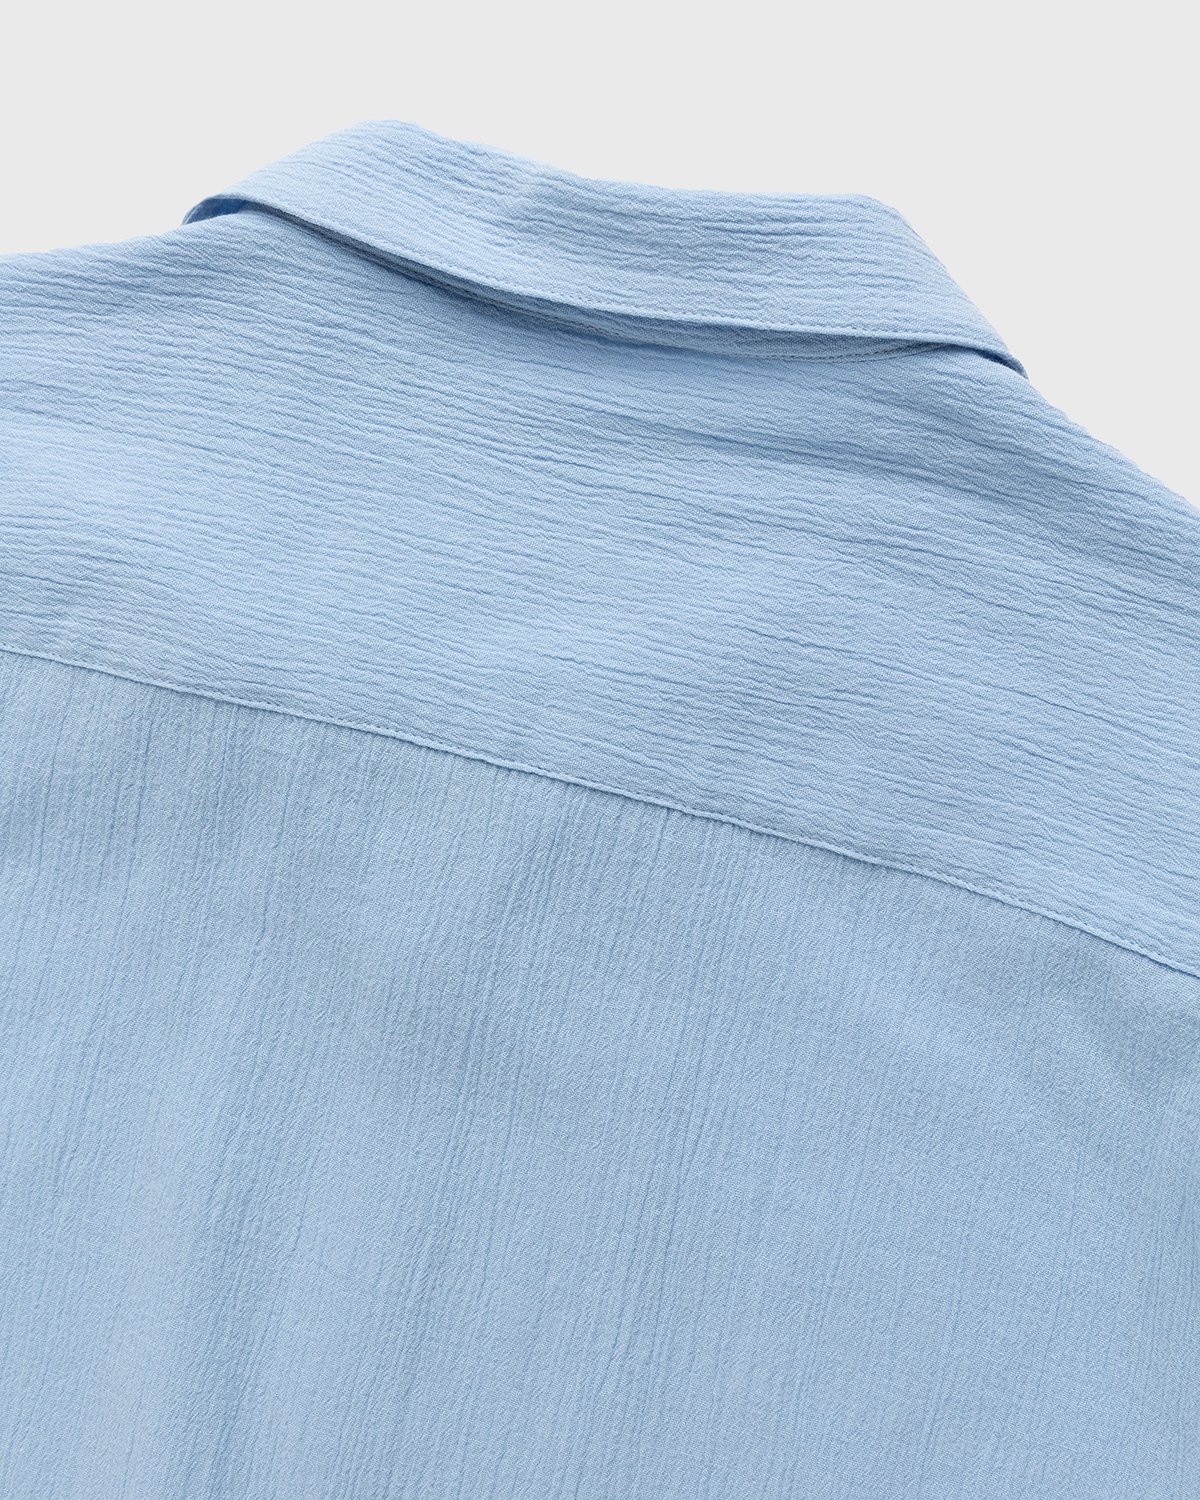 Highsnobiety - Crepe Short Sleeve Shirt Sky Blue - Clothing - Blue - Image 4